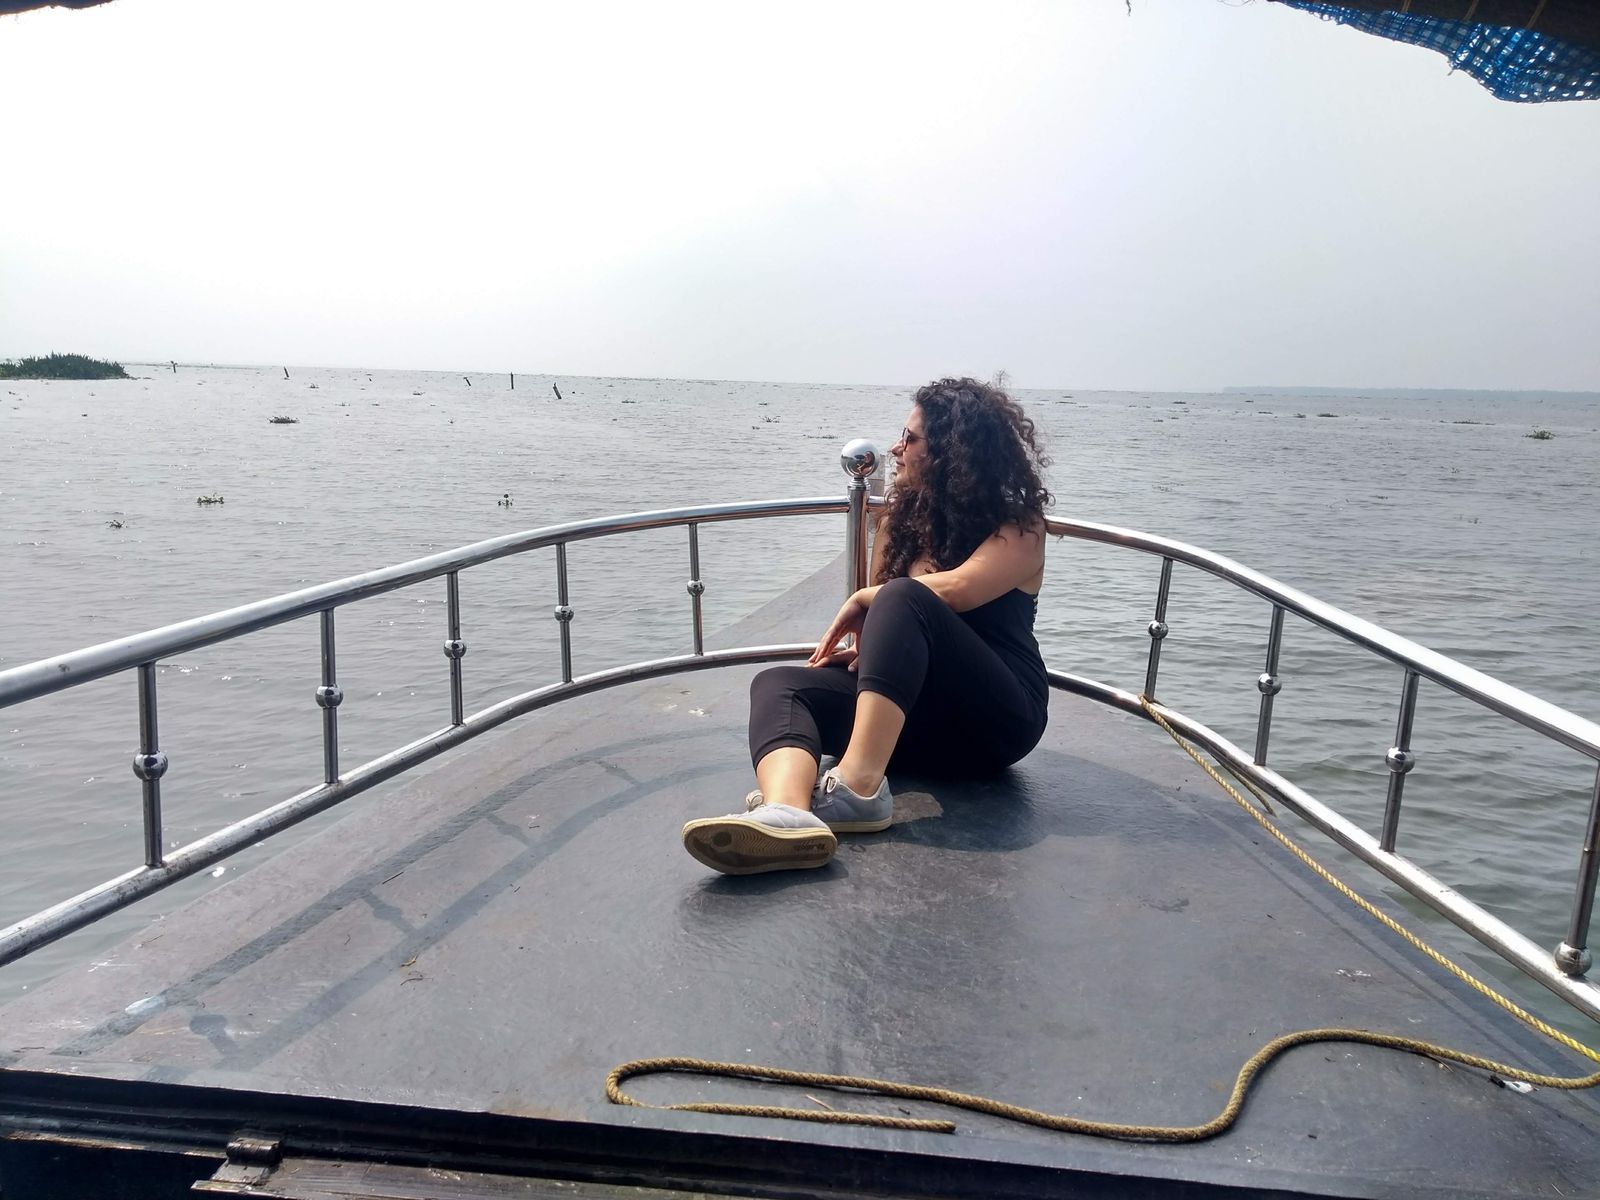 akriti at a boat deck